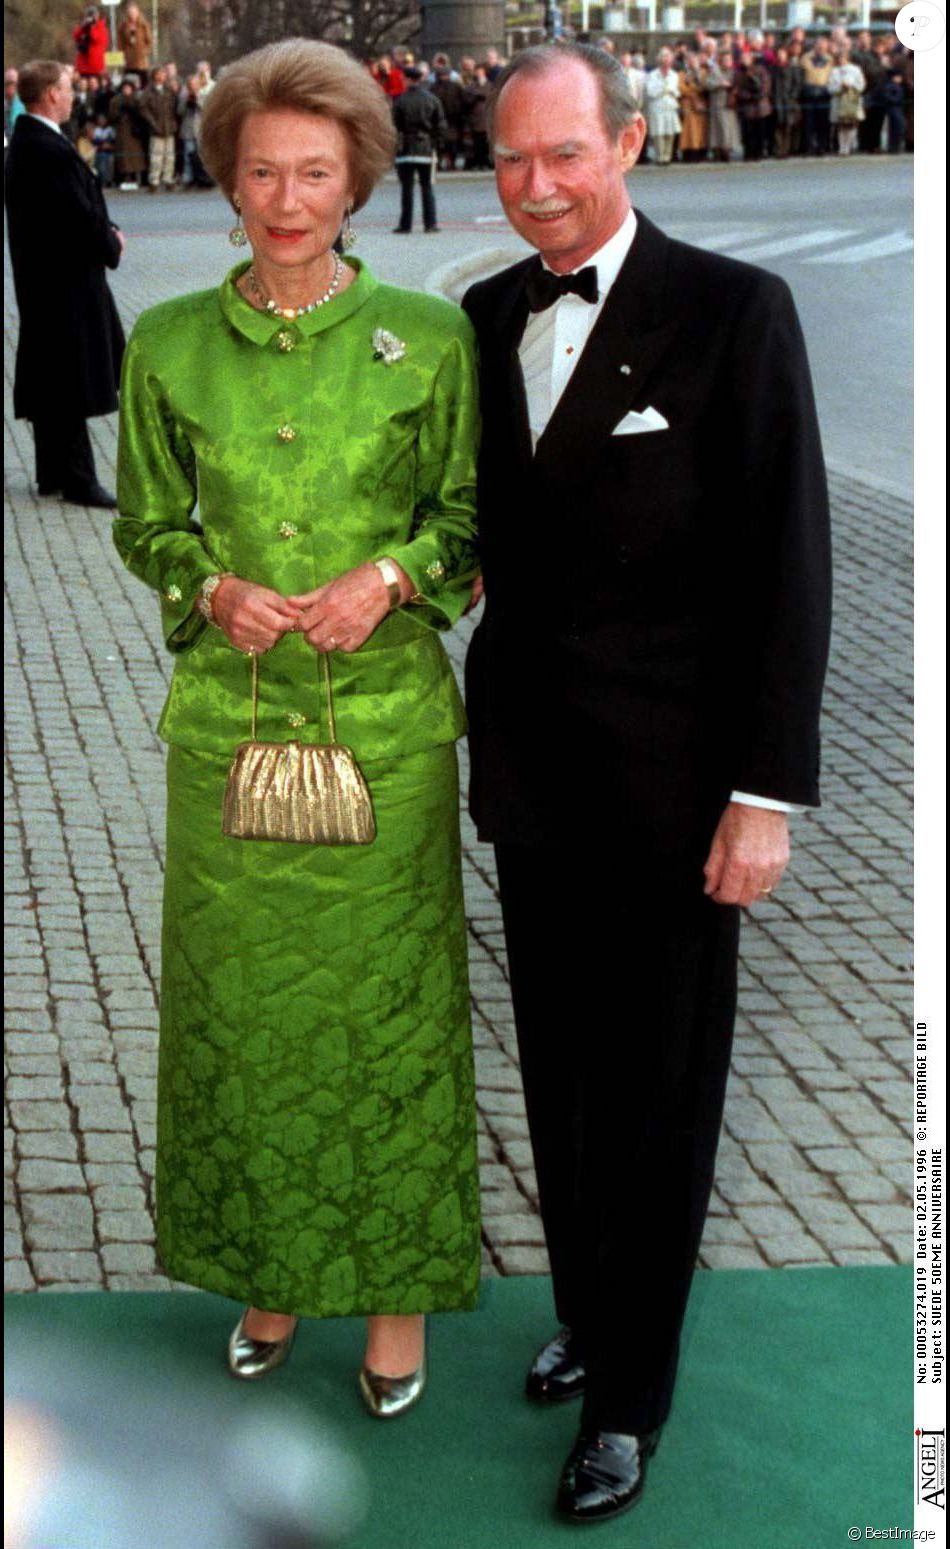 Out of date provoke Misunderstand Le grand-duc Jean de Luxembourg et son épouse la grande-duchesse  Joséphine-Charlotte lors des 50 ans du roi Carl XVI Gustaf de Suède en mai  1996 à Stockholm. Le - Purepeople